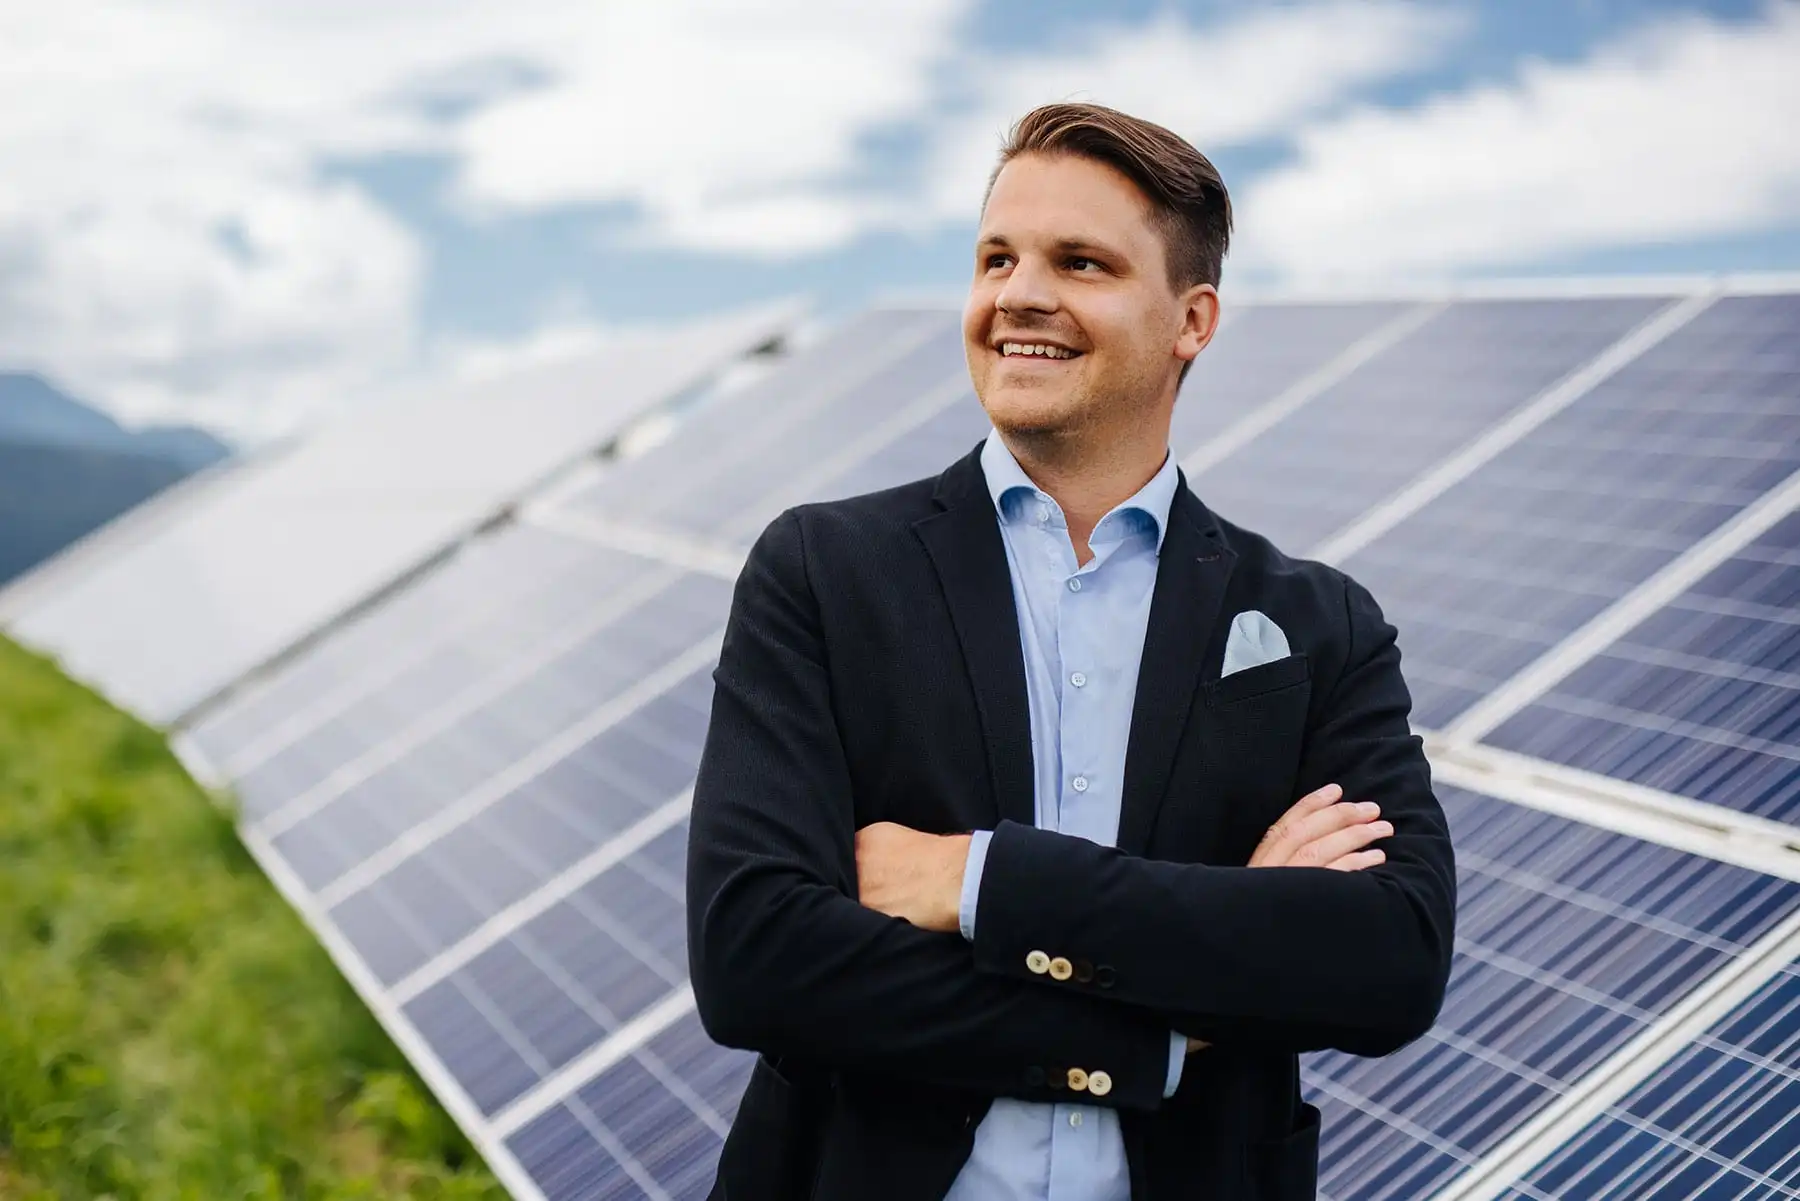 Fabian steht vor einer Photovoltaikanlage